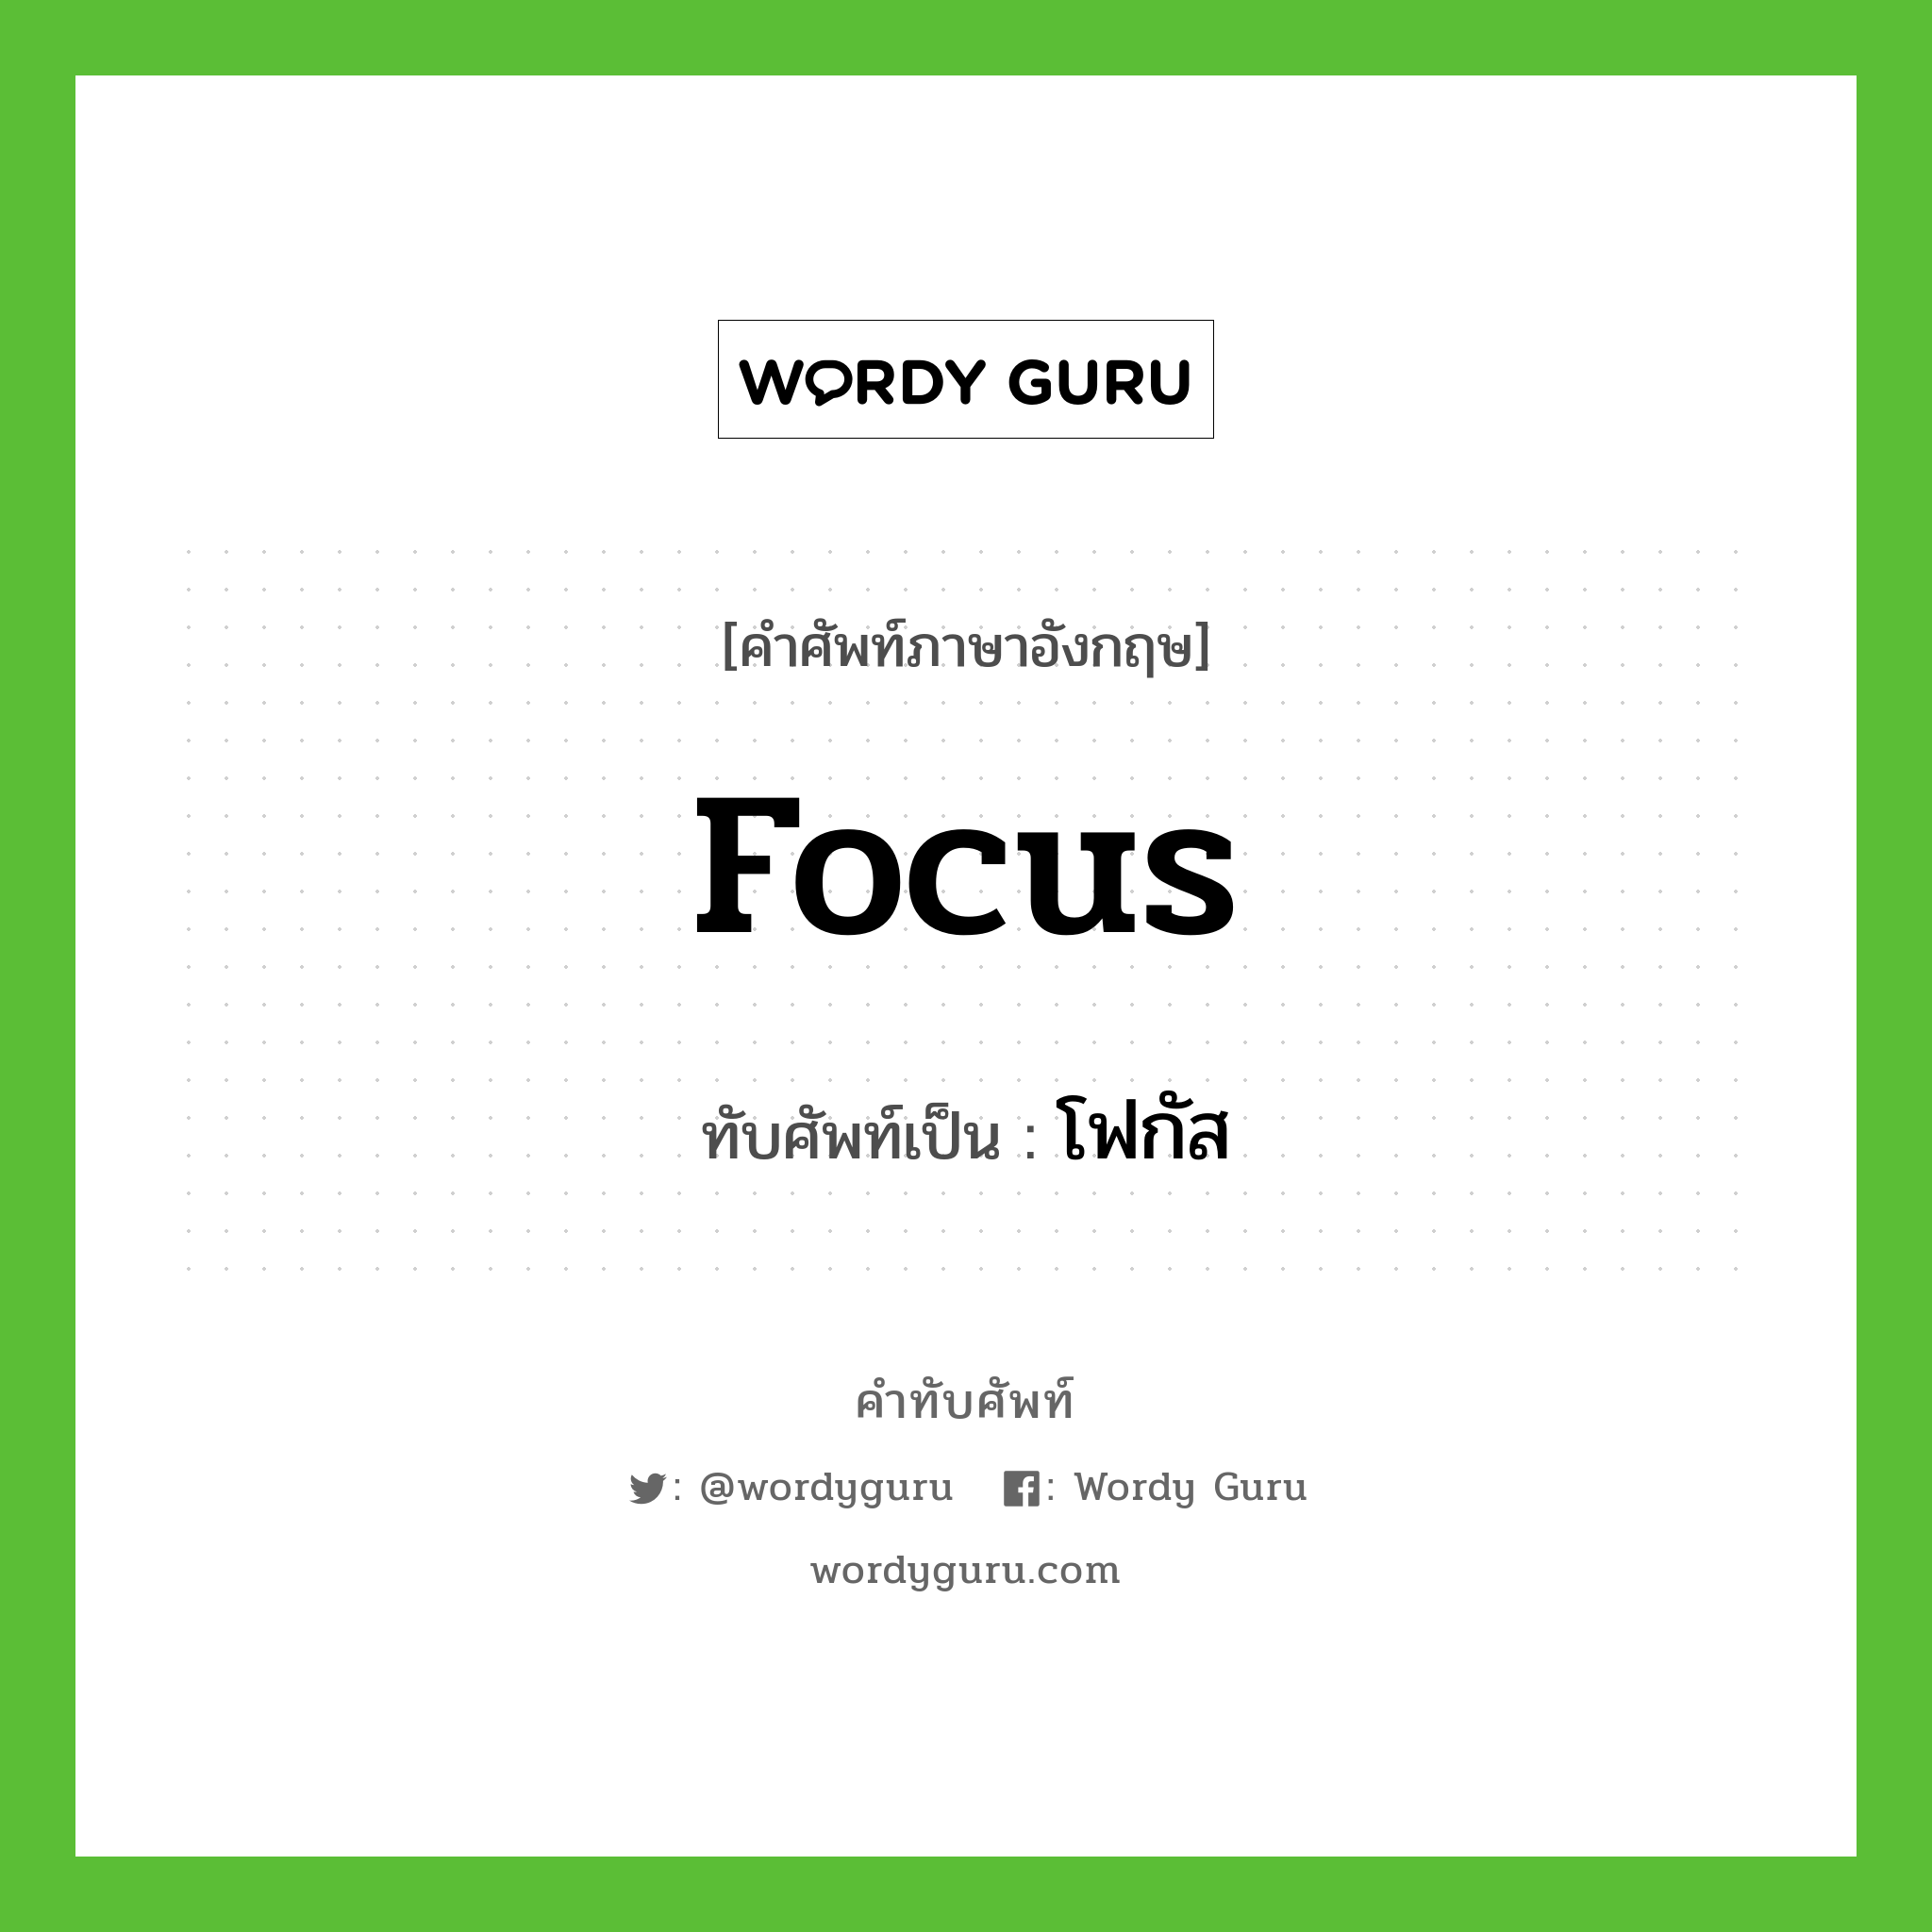 focus เขียนเป็นคำไทยว่าอะไร?, คำศัพท์ภาษาอังกฤษ focus ทับศัพท์เป็น โฟกัส